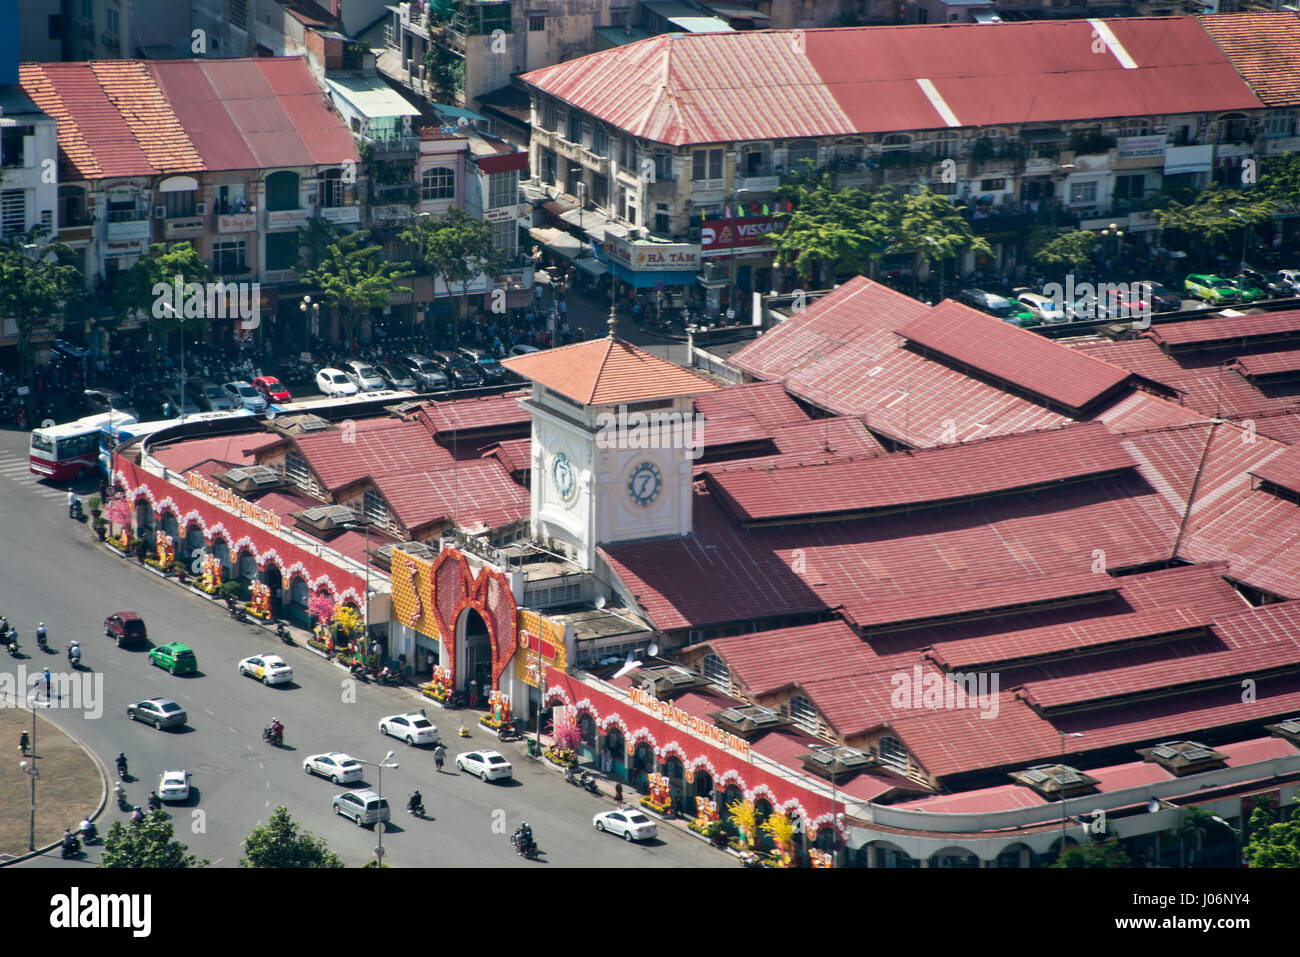 Vue aérienne de la place de marché couvert de Ben Thanh à Hô Chi Minh Ville au Vietnam. Banque D'Images